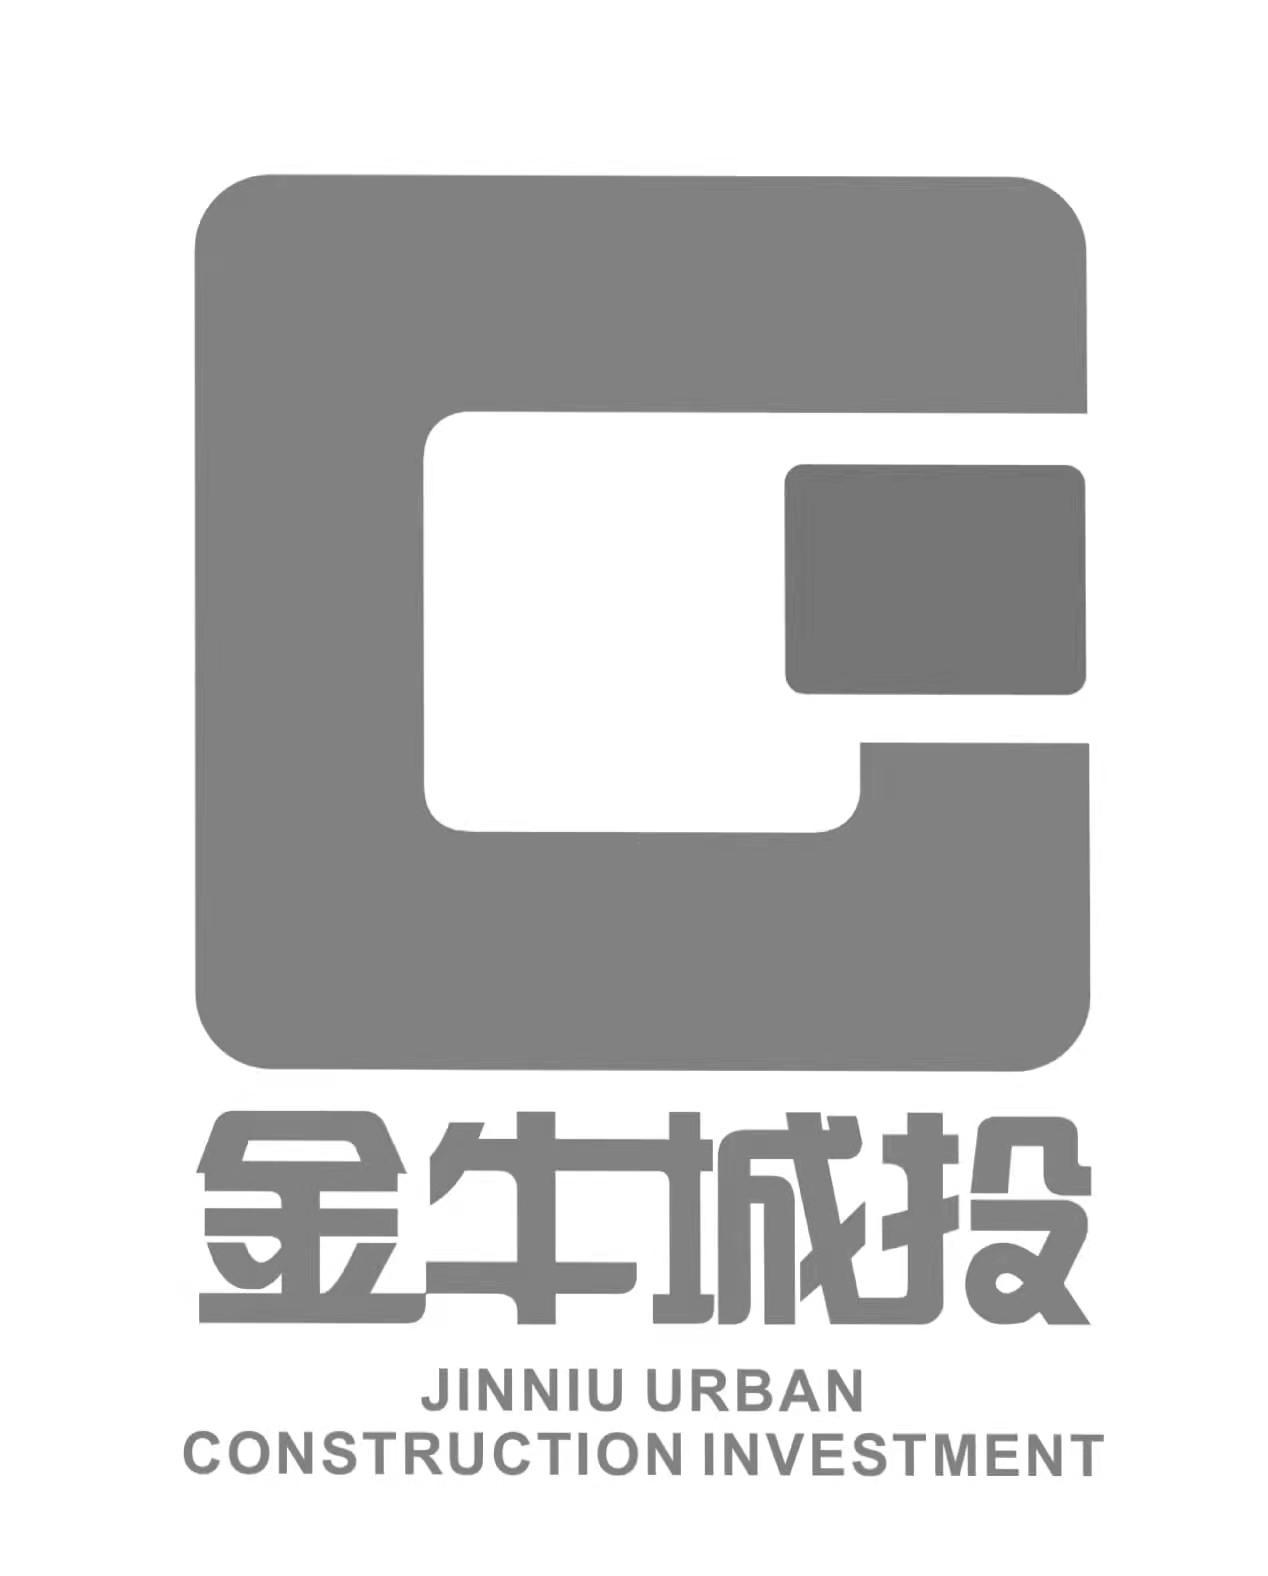 成都市金牛区标志logo图片